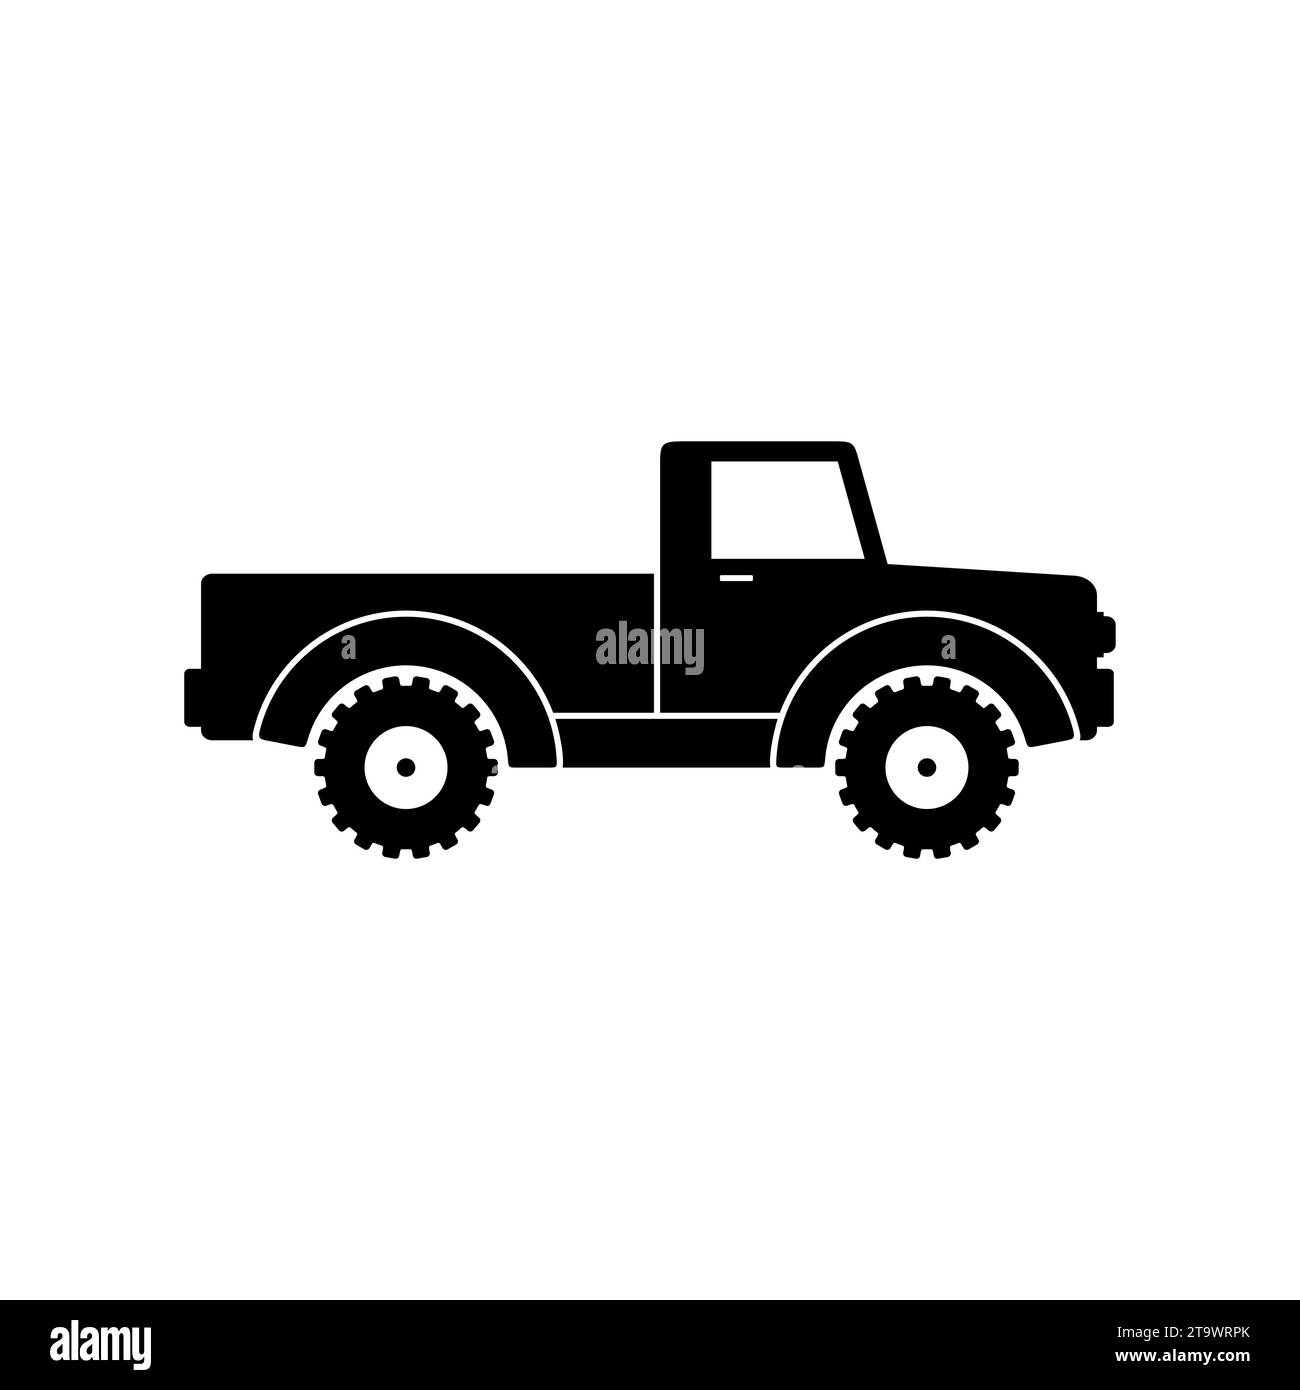 Icono de camioneta retro aislado sobre fondo blanco. Vehículos agrícolas clásicos para el transporte y la producción de transporte. Coche de transporte vintage Ilustración del Vector